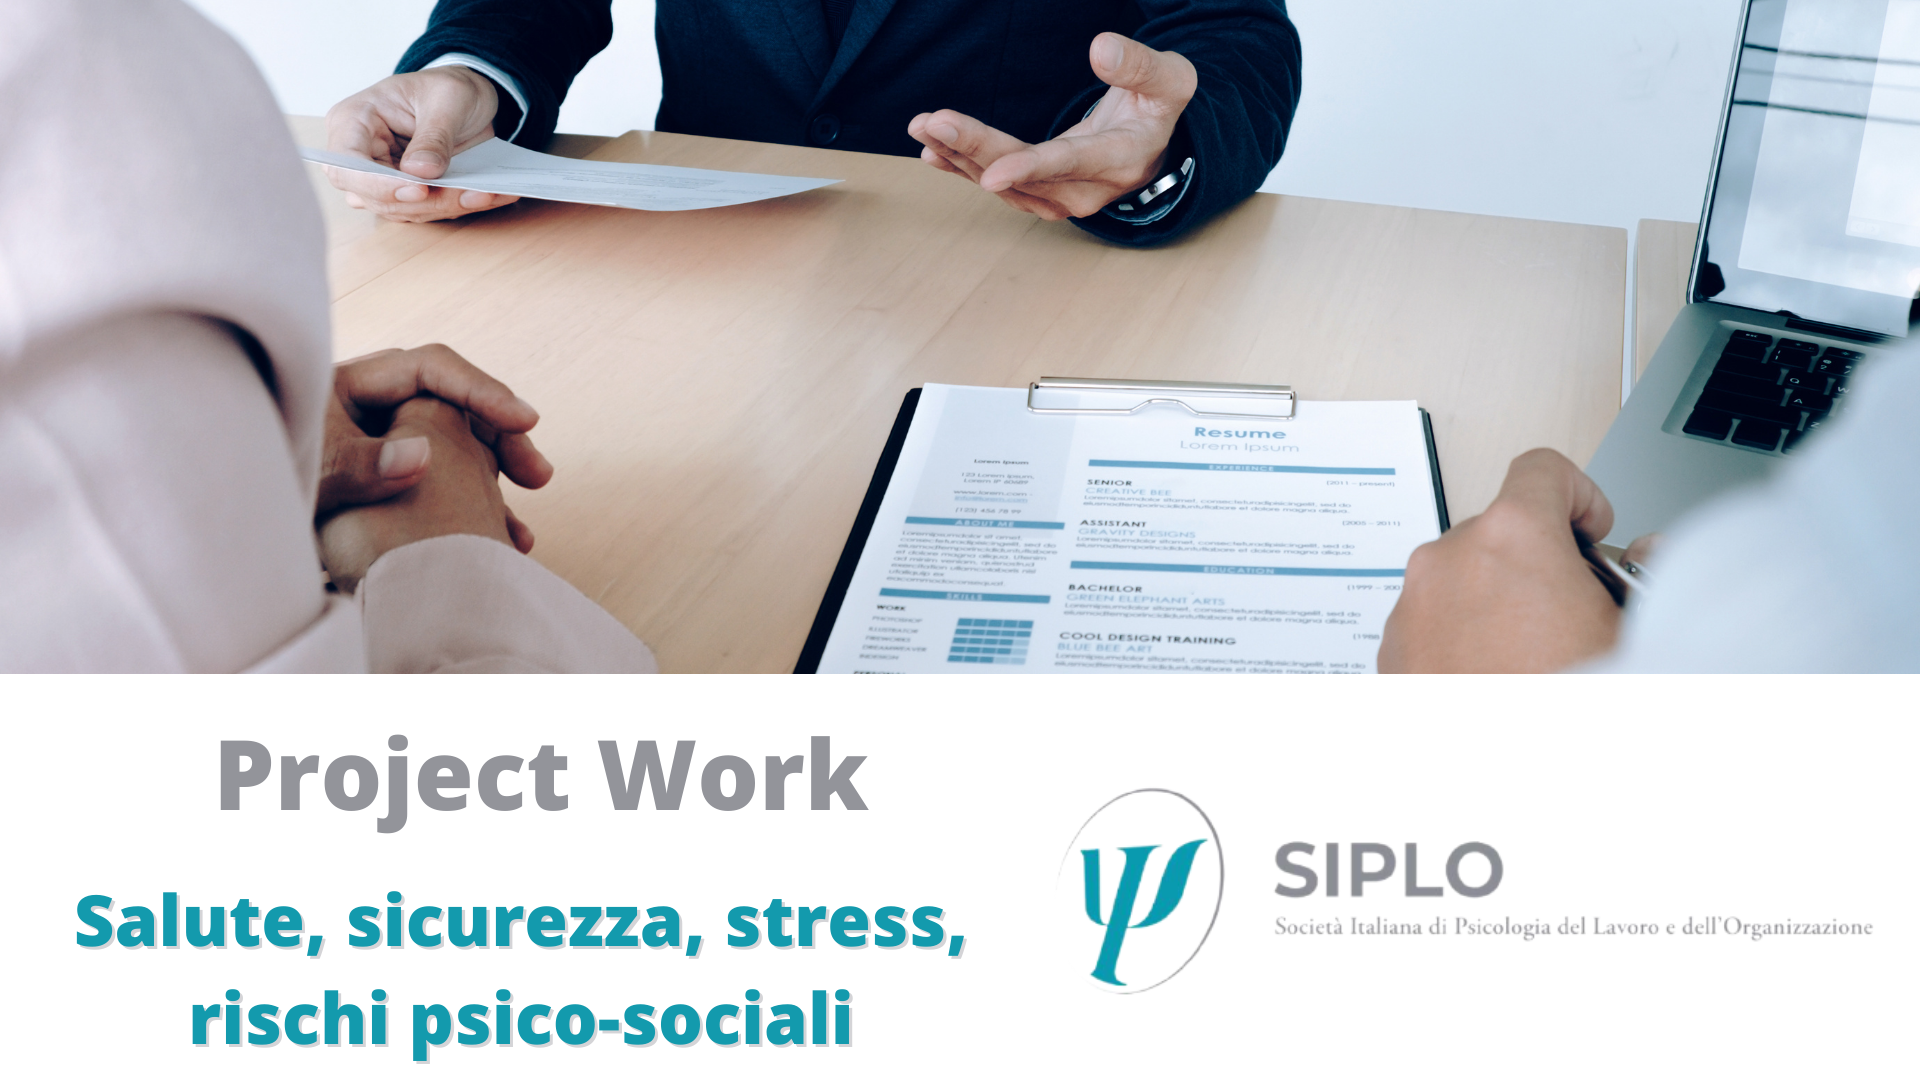 L’idoneità psicologica e il rientro al lavoro, entriamo nel merito di un Project Work SIPLO.